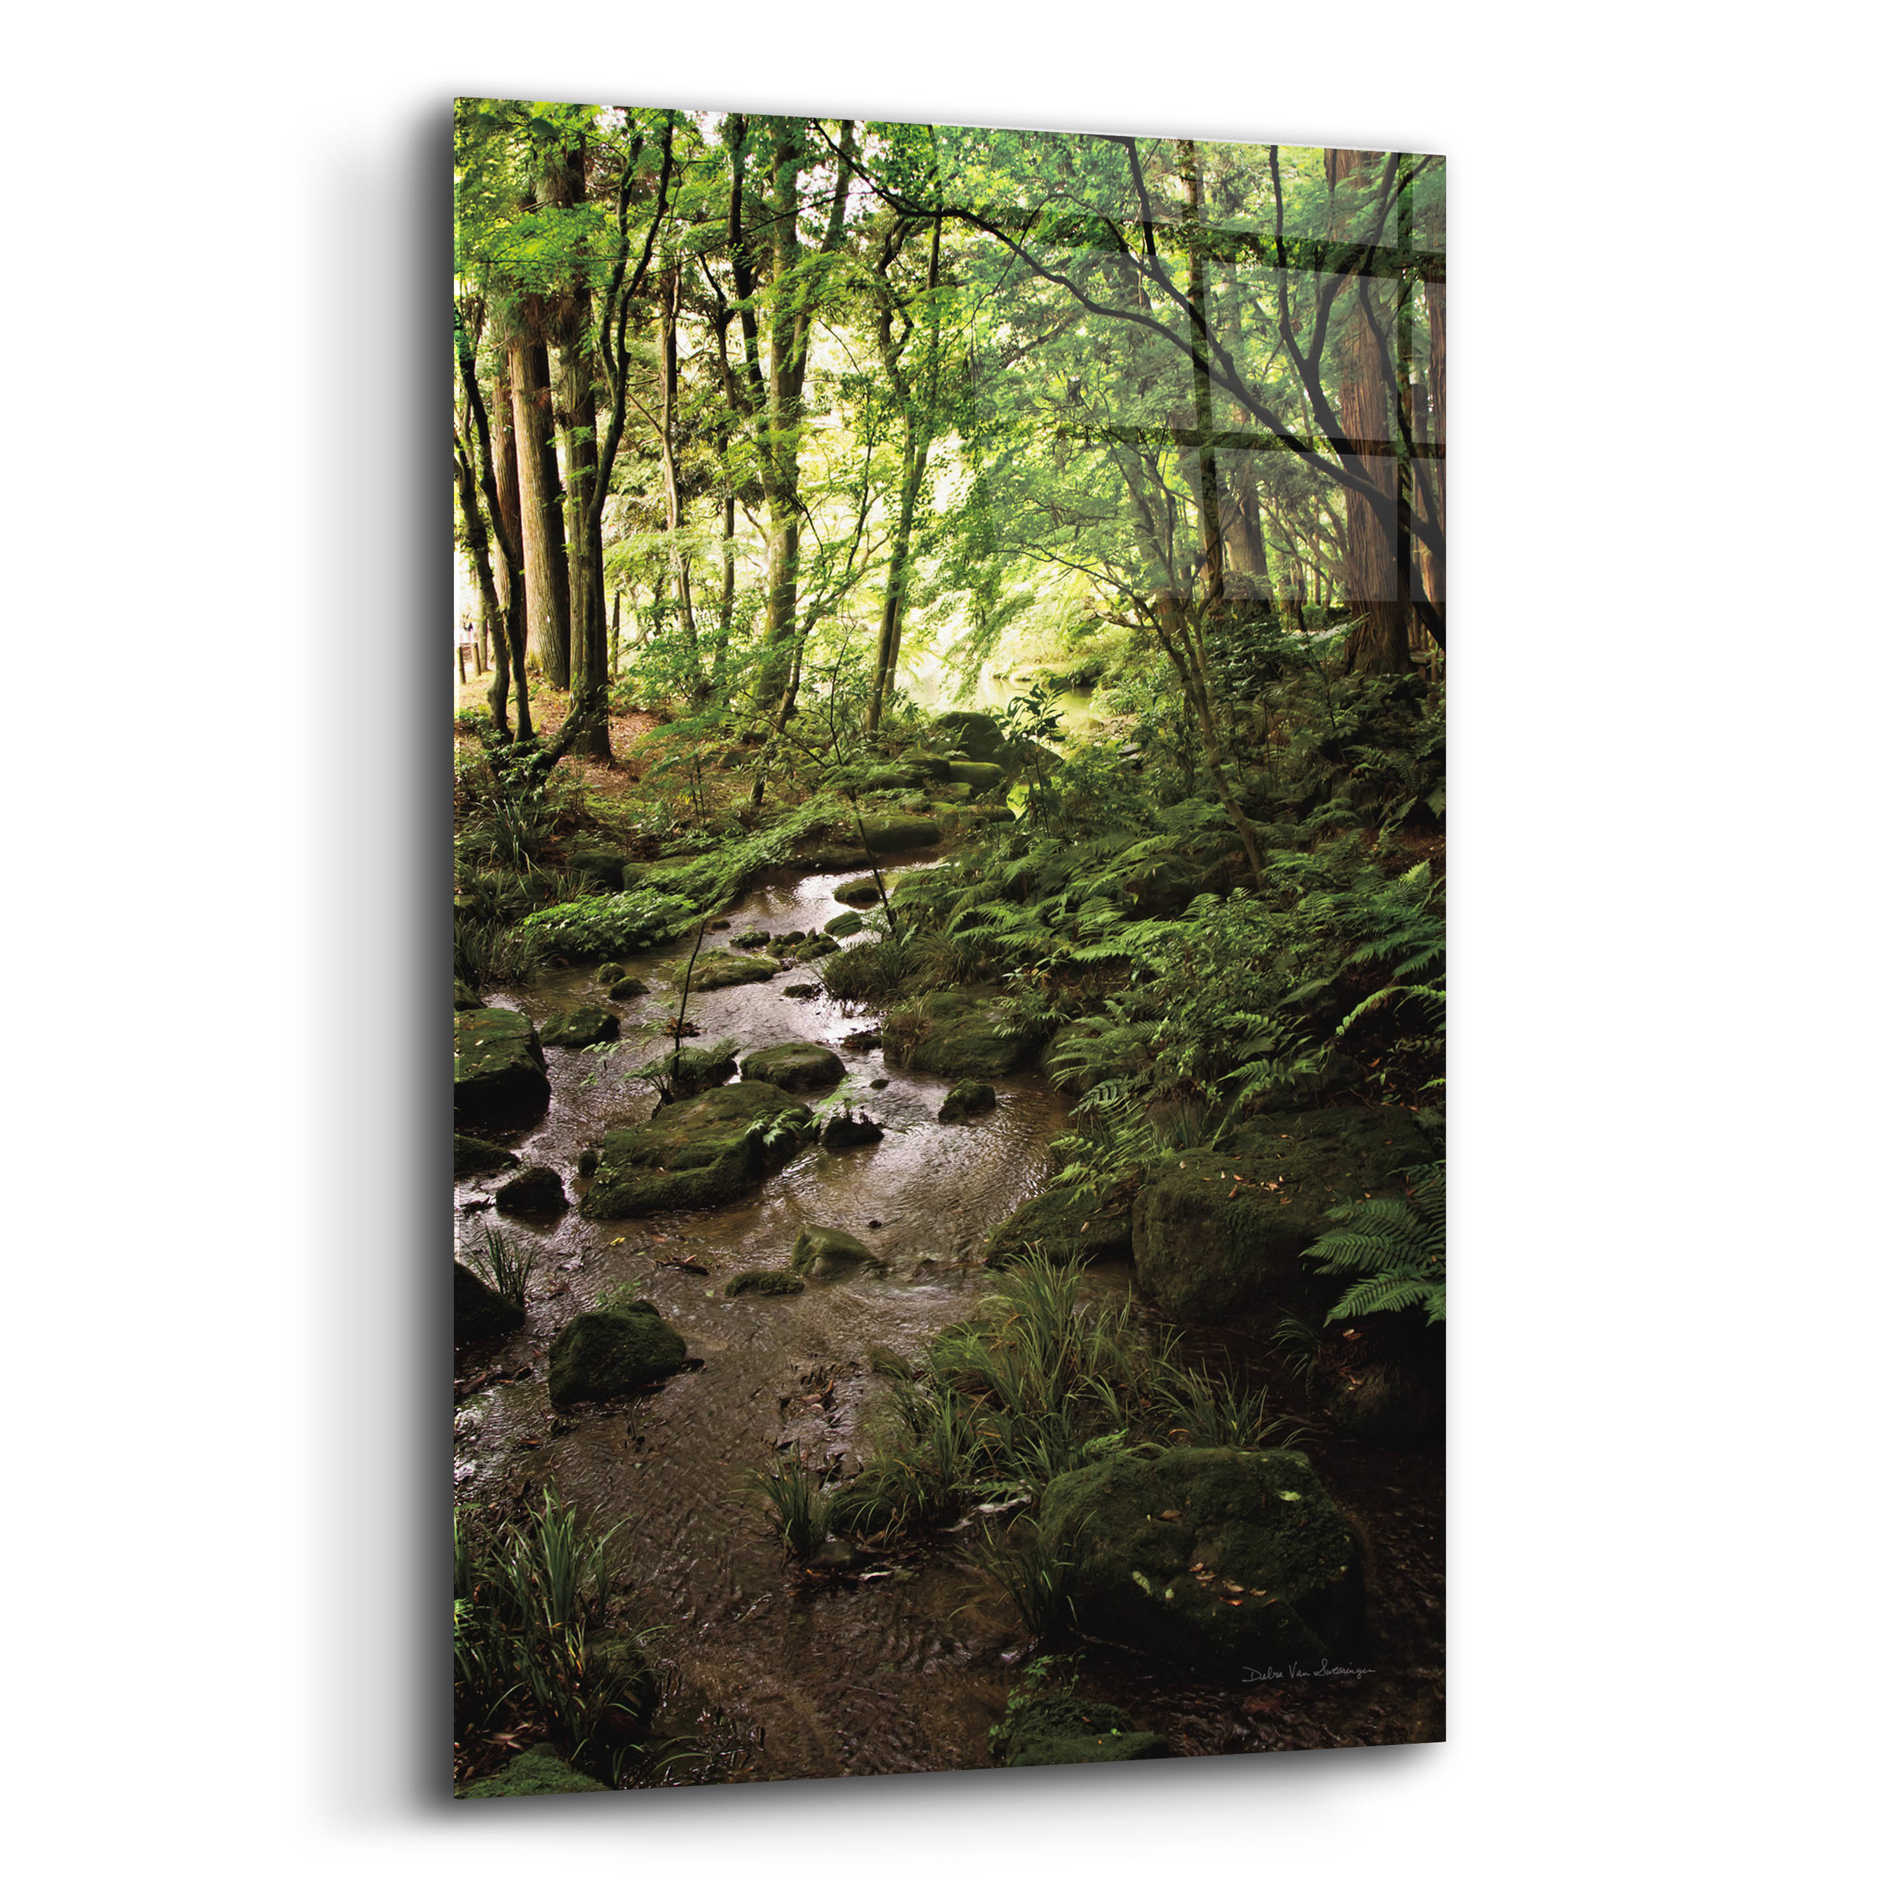 Epic Art 'Lush Creek in Forest' by Debra Van Swearingen, Acrylic Glass Wall Art,12x16